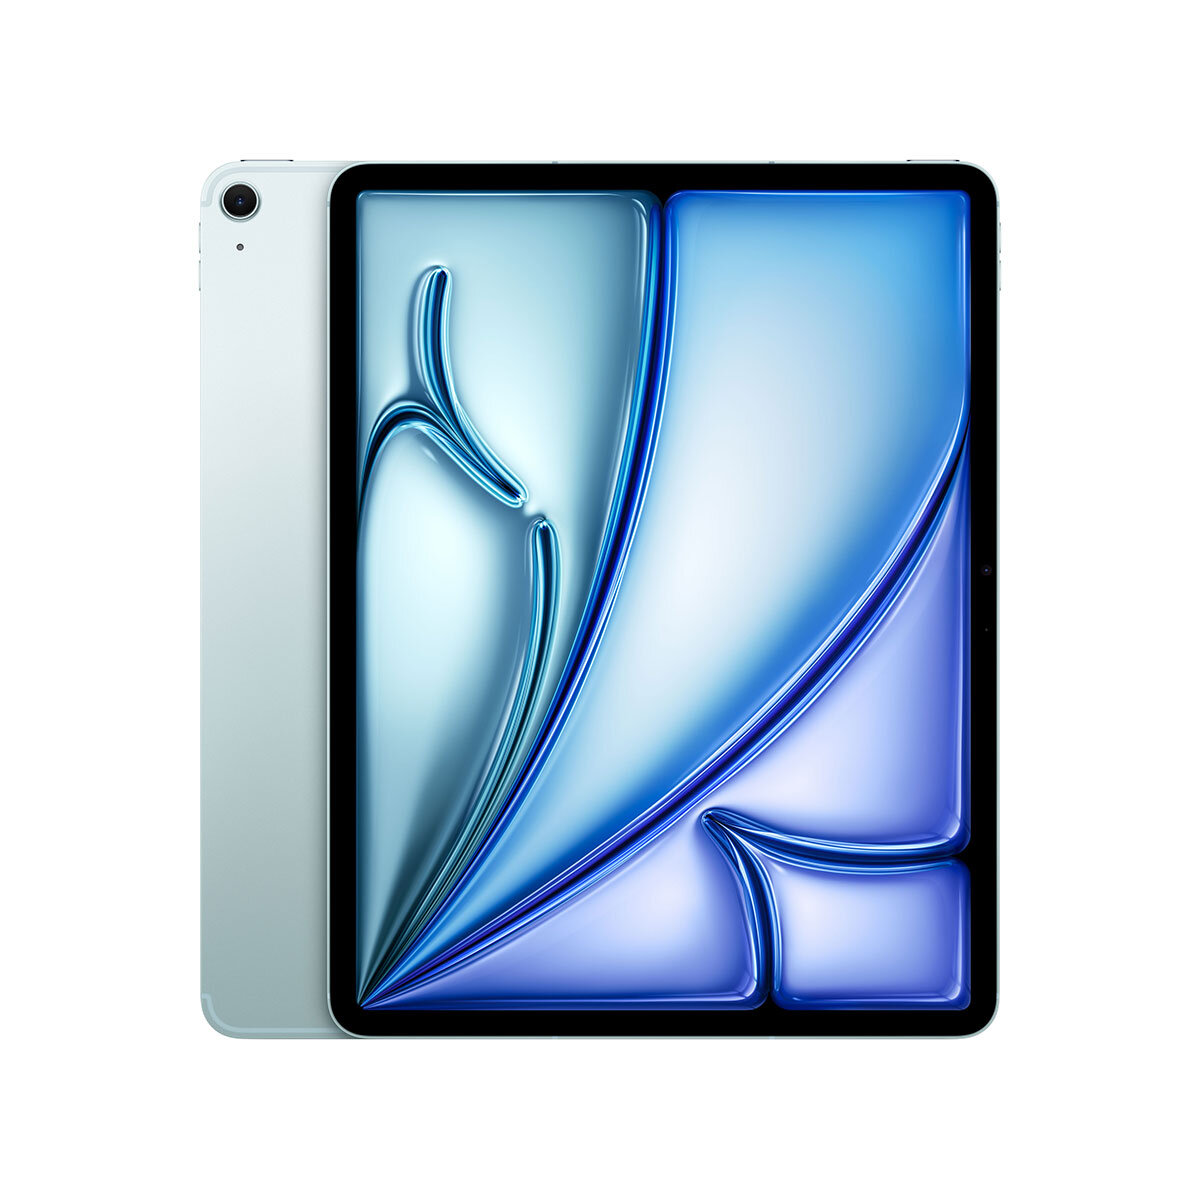 Apple iPad Air, 13 Inch, WiFi+Cellular 512GB in Blue, MV713NF/A